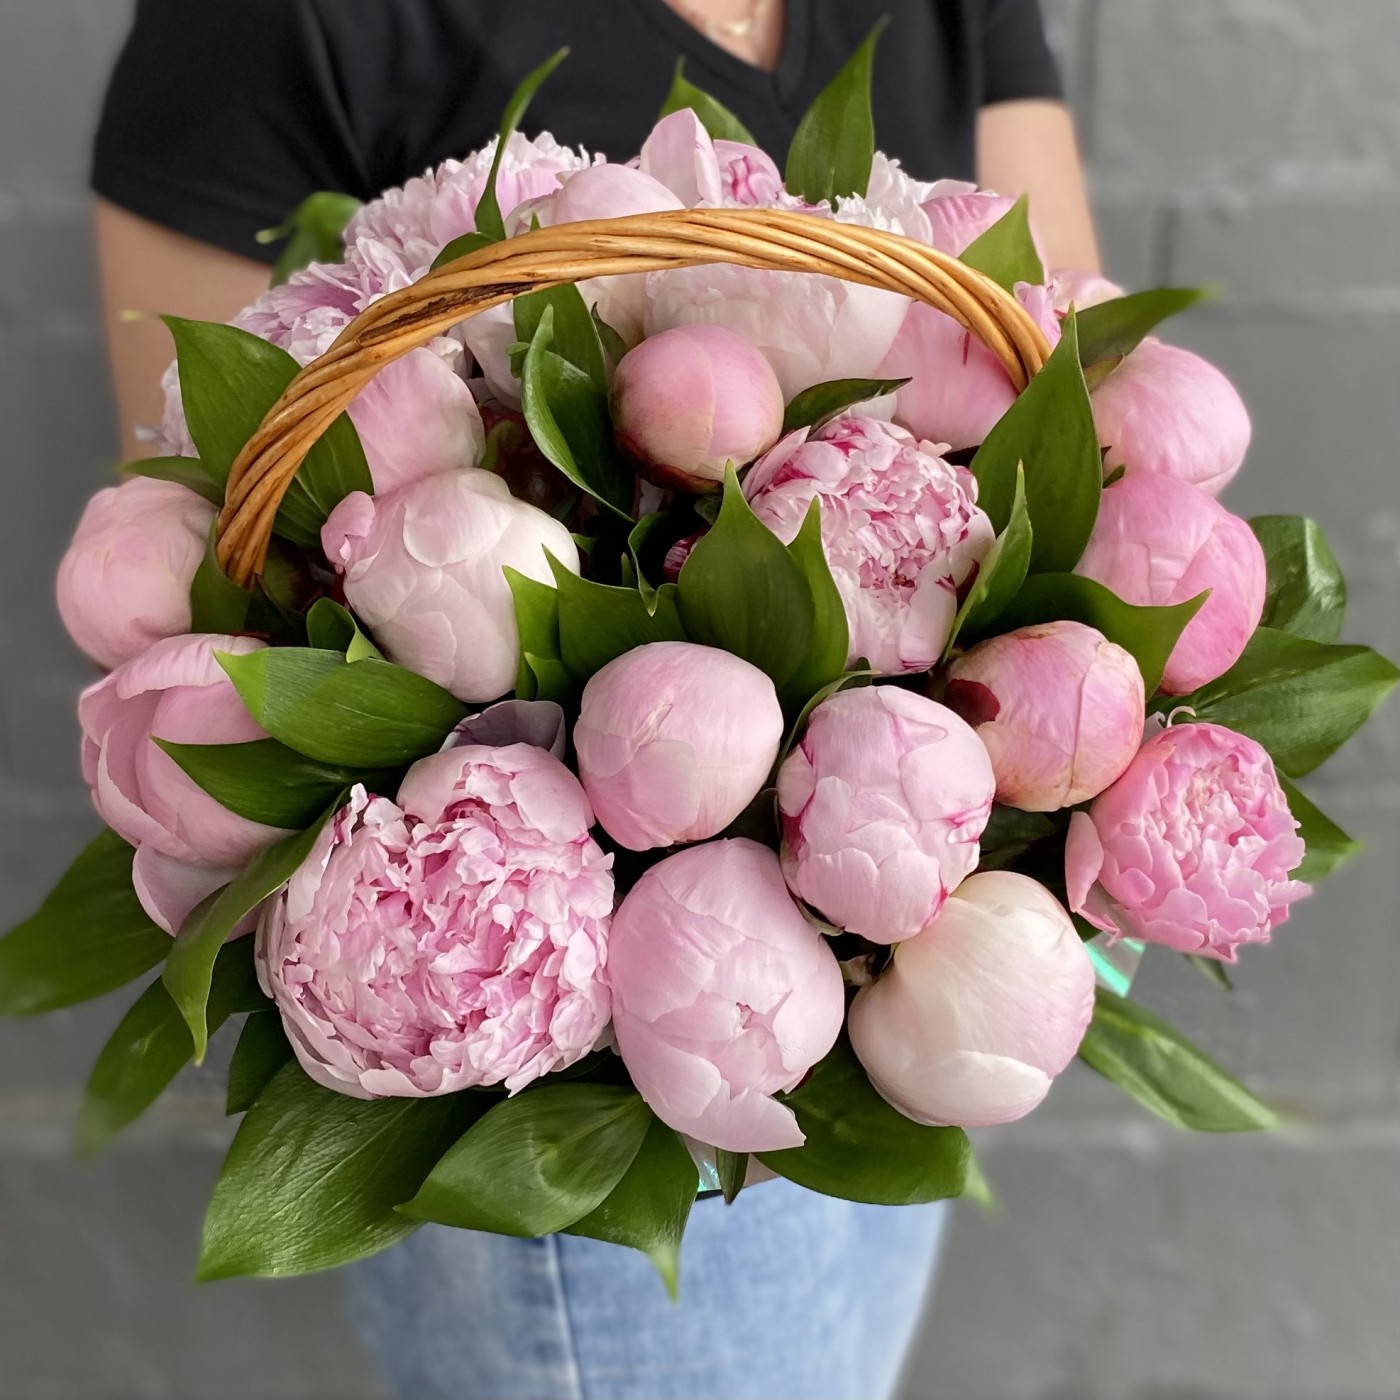 25 розовых пионов Сара Бернар в корзине